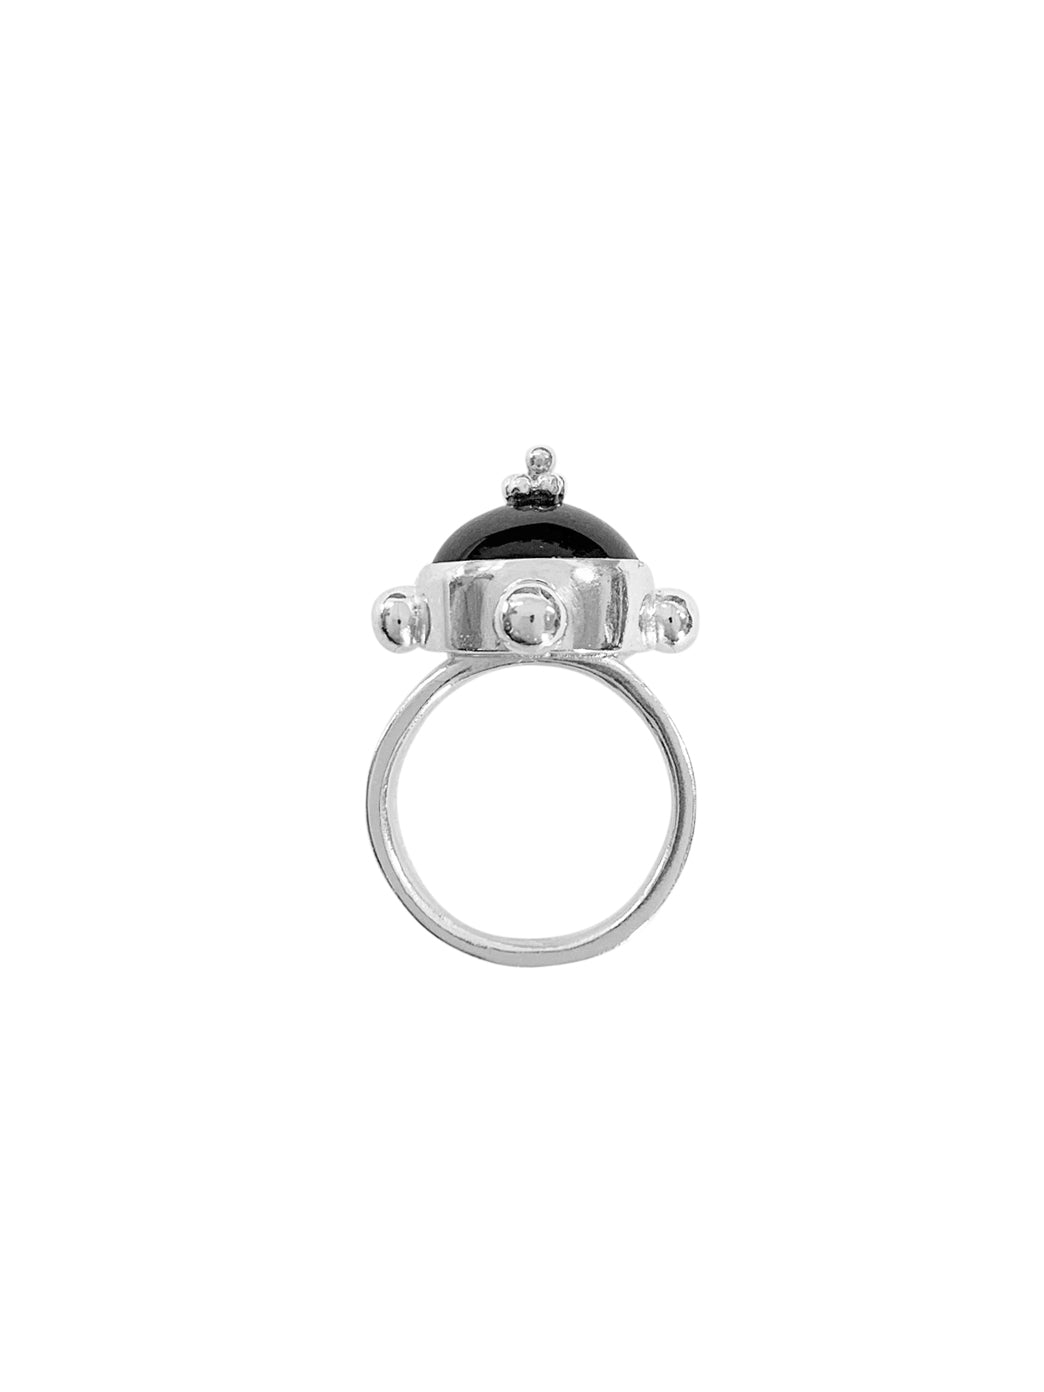 Black Diamond Pinky Ring | Aubade Jewelry